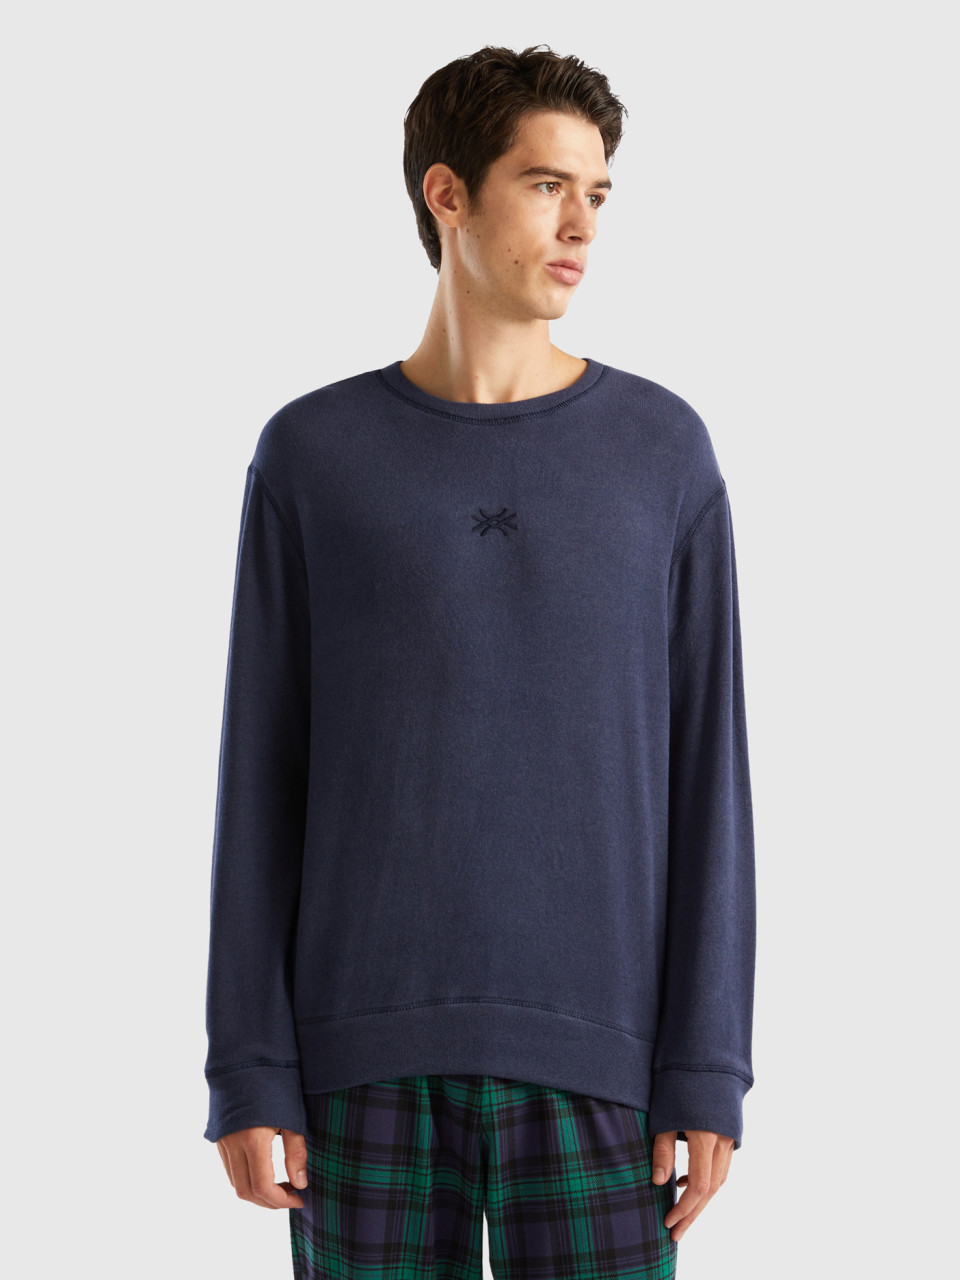 Benetton, Warm Stretch Cotton Blend Sweater, Dark Blue, Men